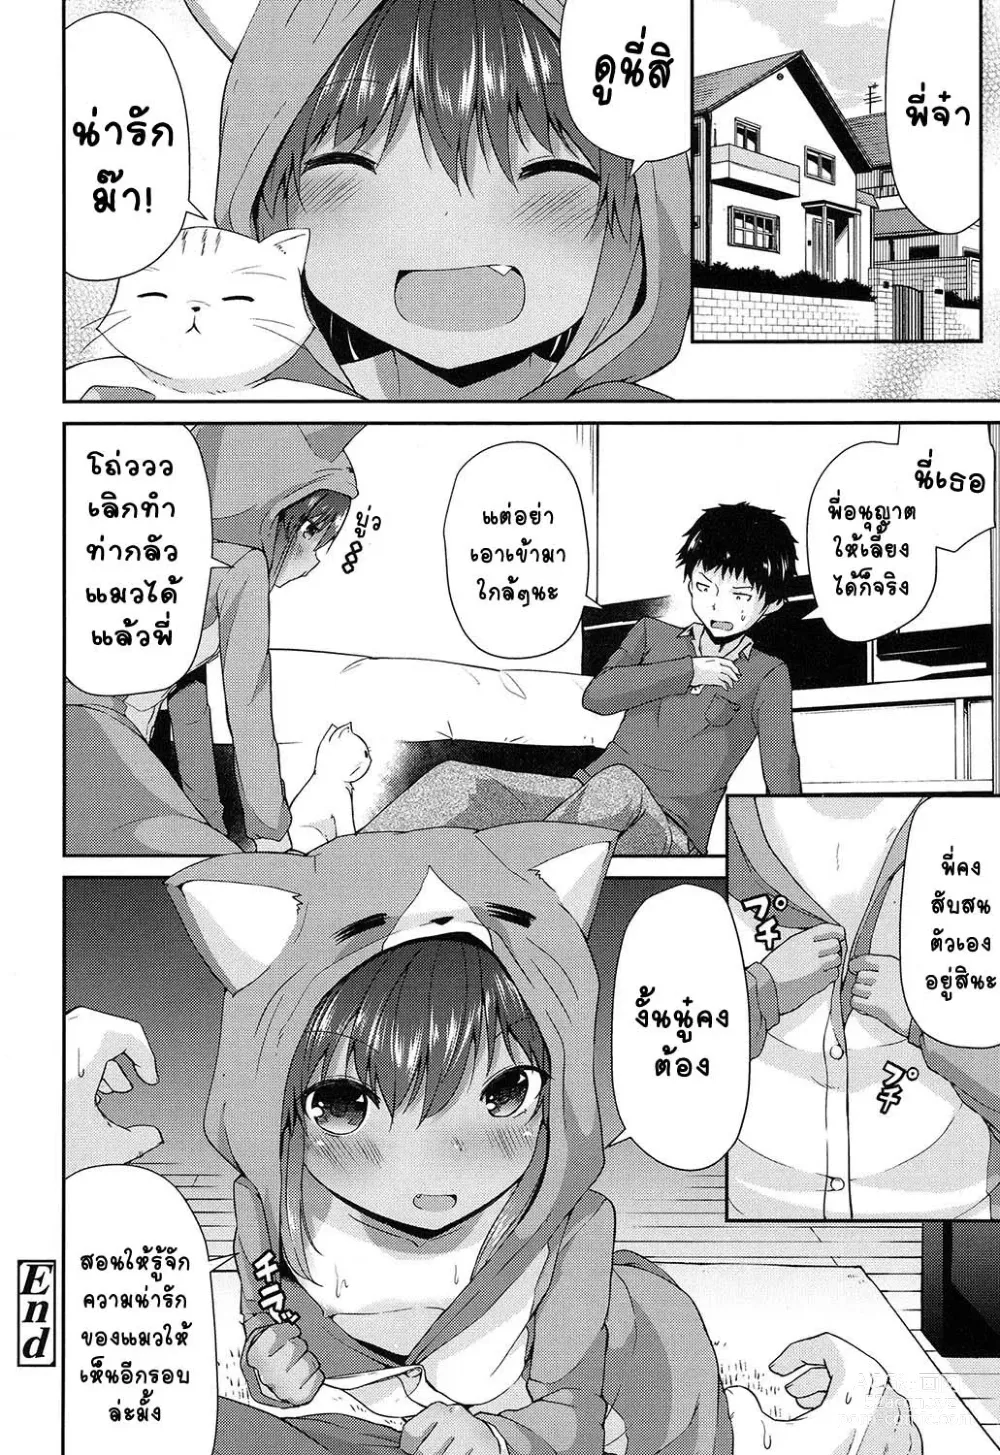 Page 18 of manga Waga Uchi no Neko Jijou